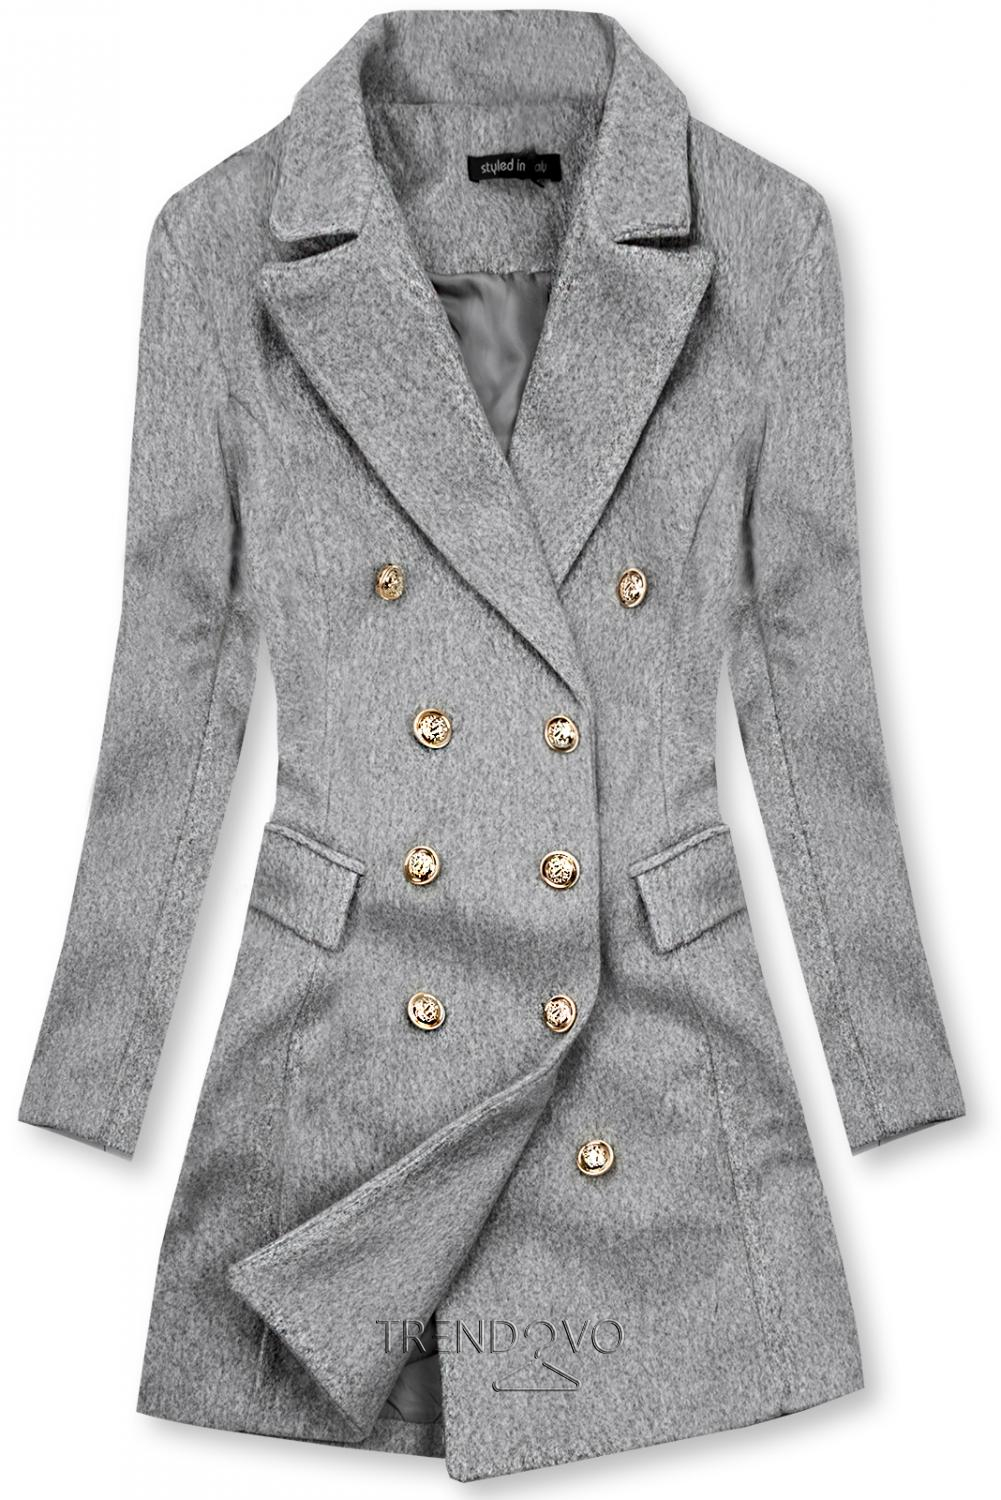 Elegantní podzimní kabát melírovaný šedý